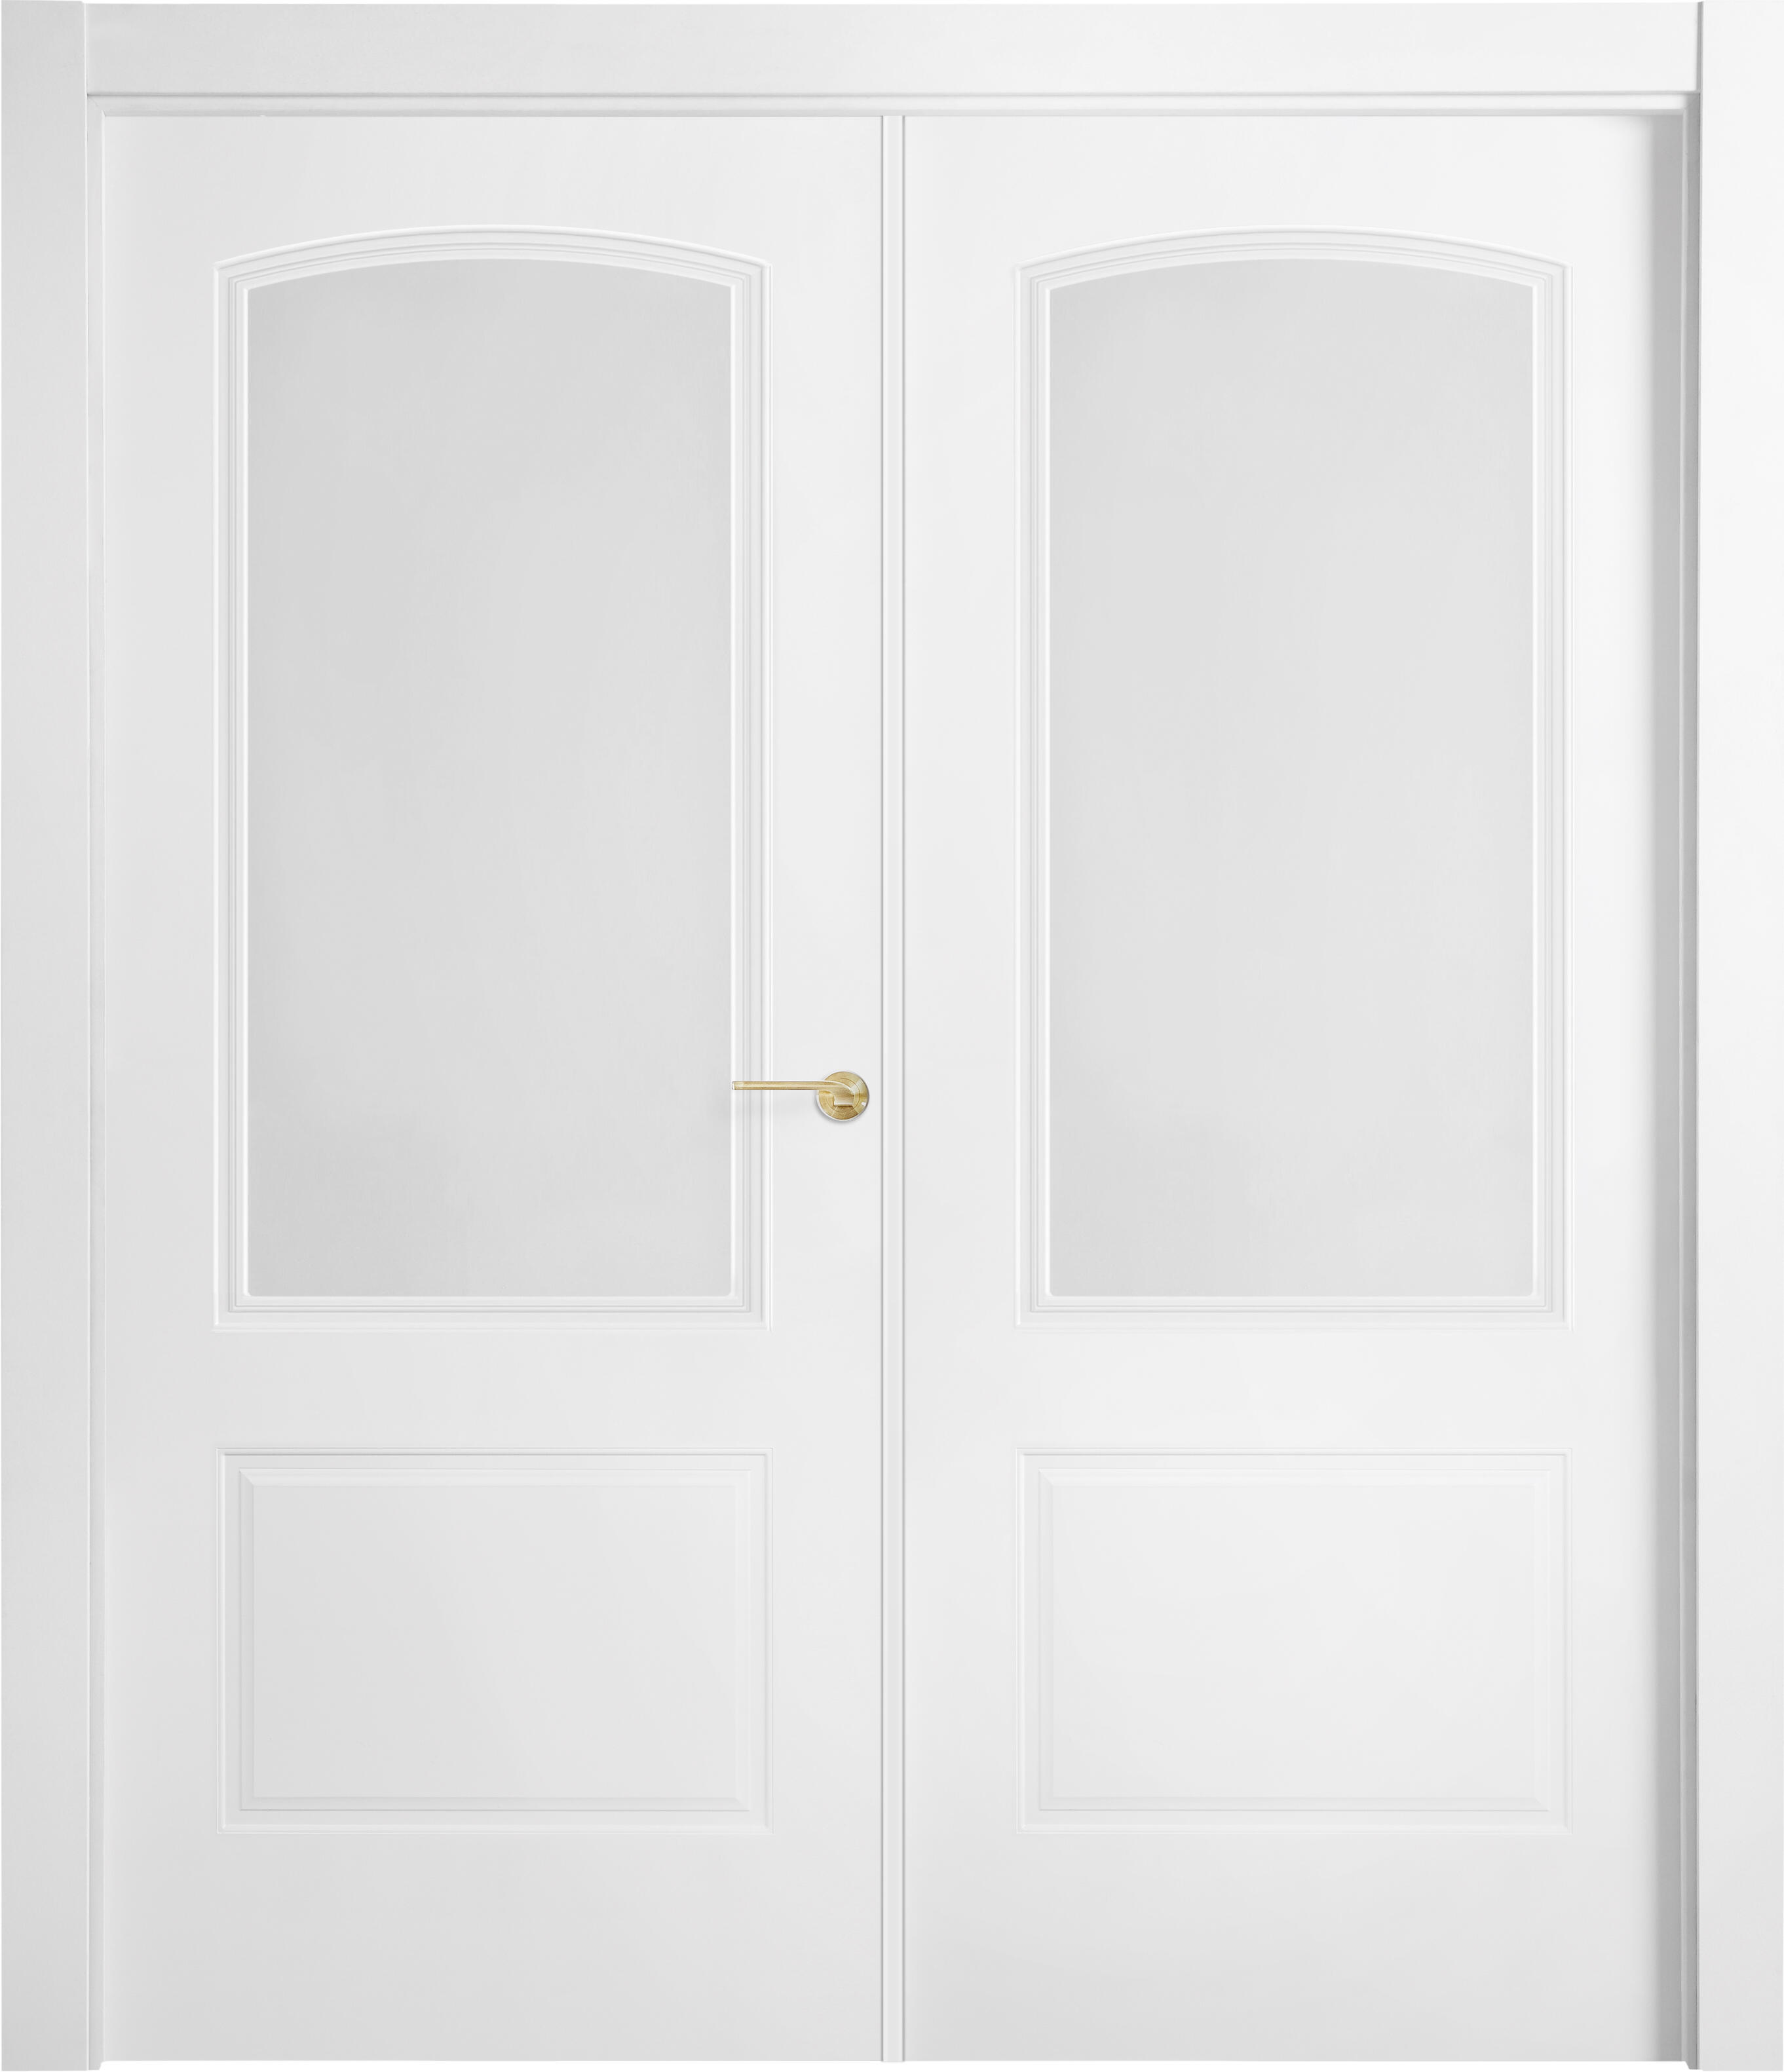 Puerta berlin plus blanco apertura derecha con cristal 9x145cm